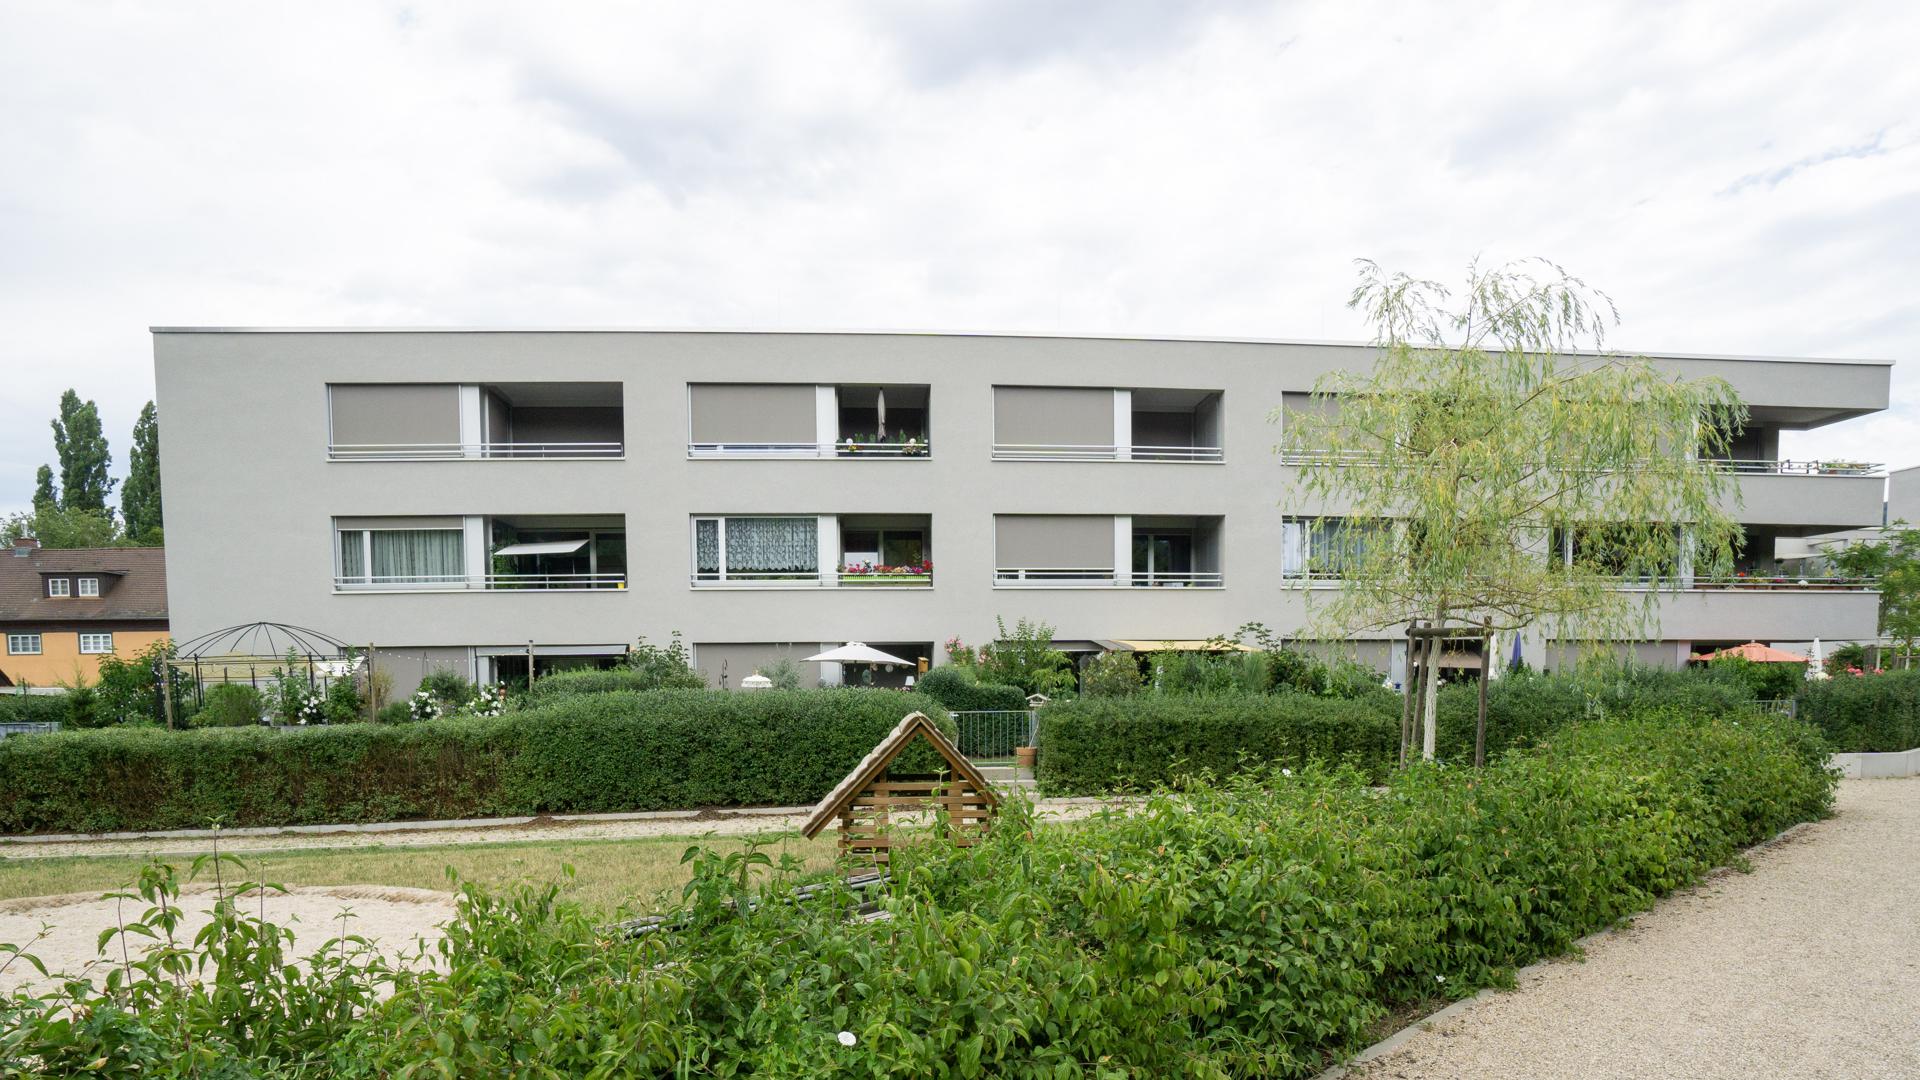 Die Wohnanlage am Ooswinkel in Baden-Baden ist nach einem Entwurf von Freivogel Mayer Architekten im Auftrag der Baugenossenschaft Baden-Baden entstanden. Sie wurde mit der Hugo-Häring-Auszeichnung des Bundes Deutscher Architektinnen und Architekten (BDA) prämiert. 